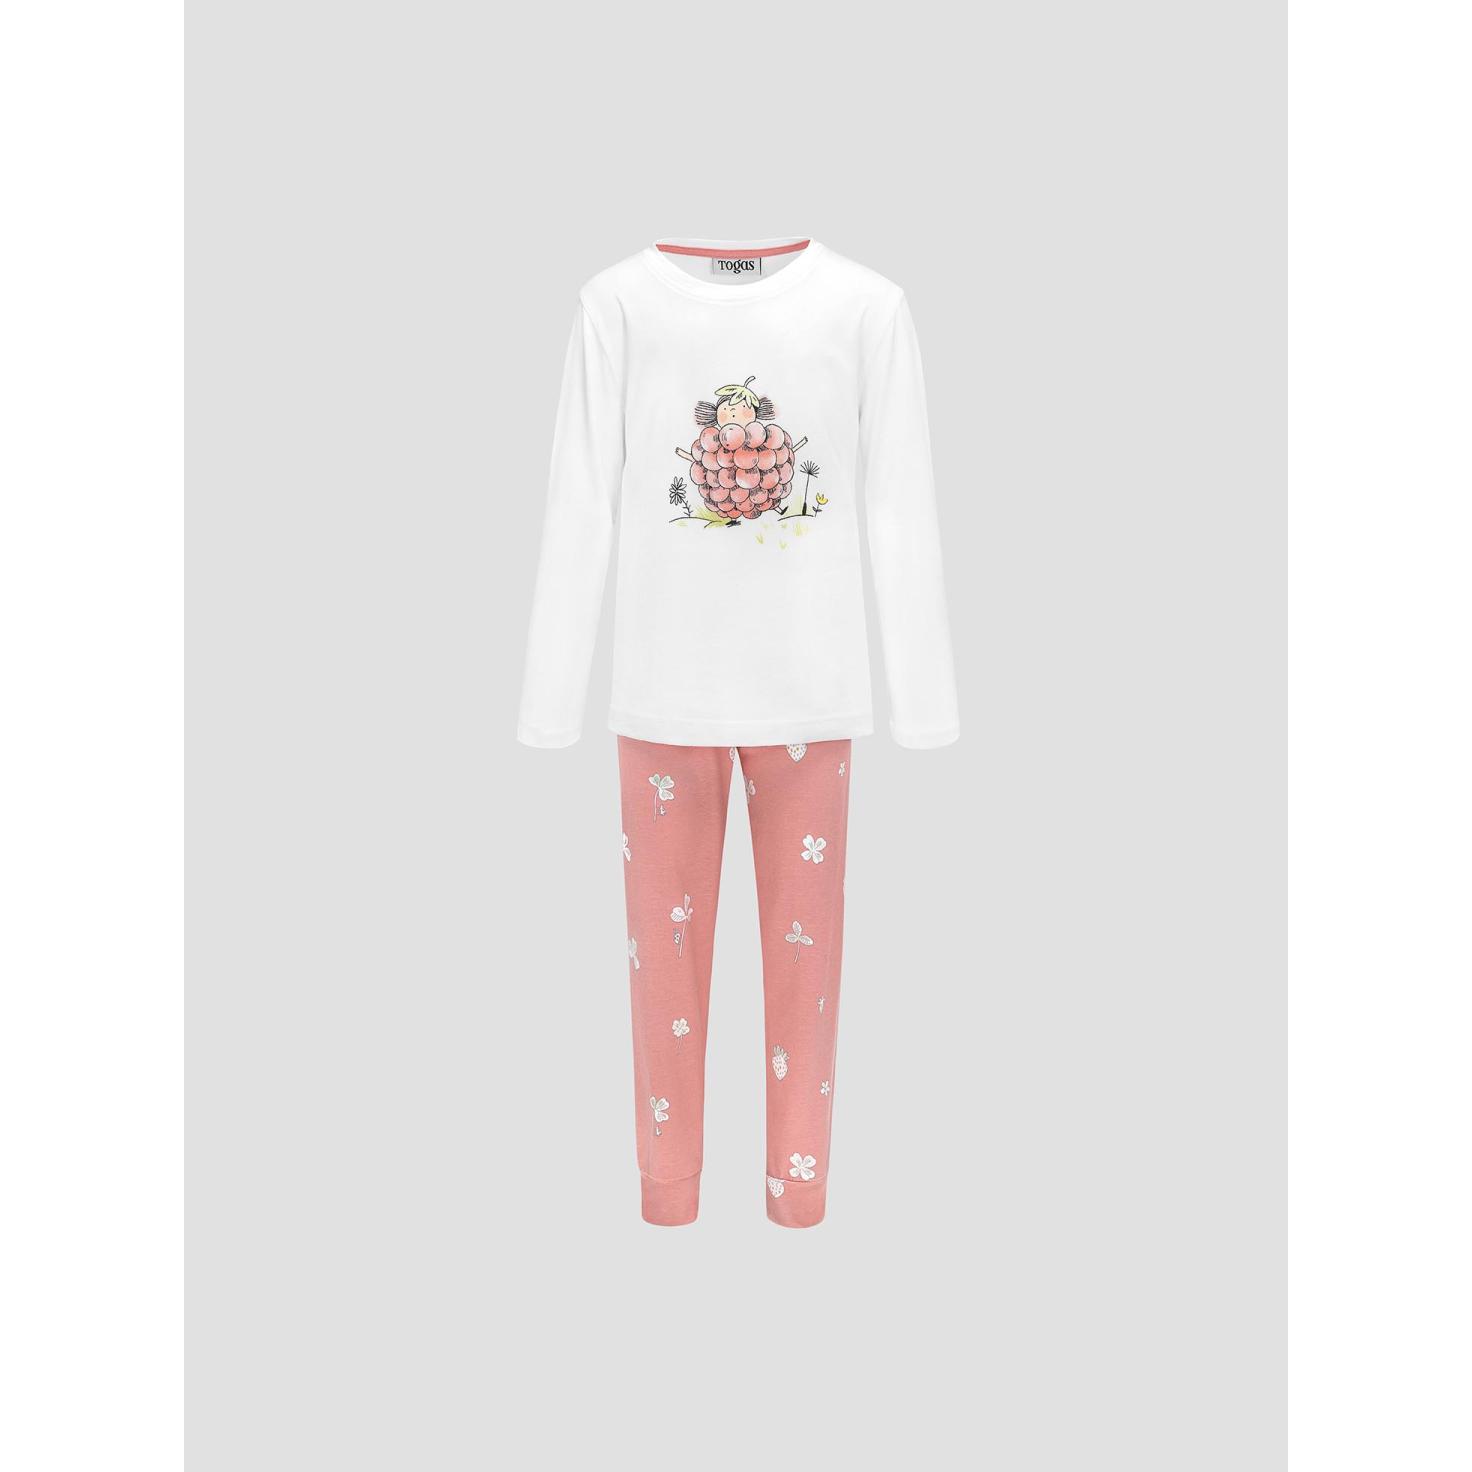 Пижама для девочек Kids by togas Стробби бело-розовый 92-98 см пижама для девочек kids by togas стробби бело розовый 104 110 см